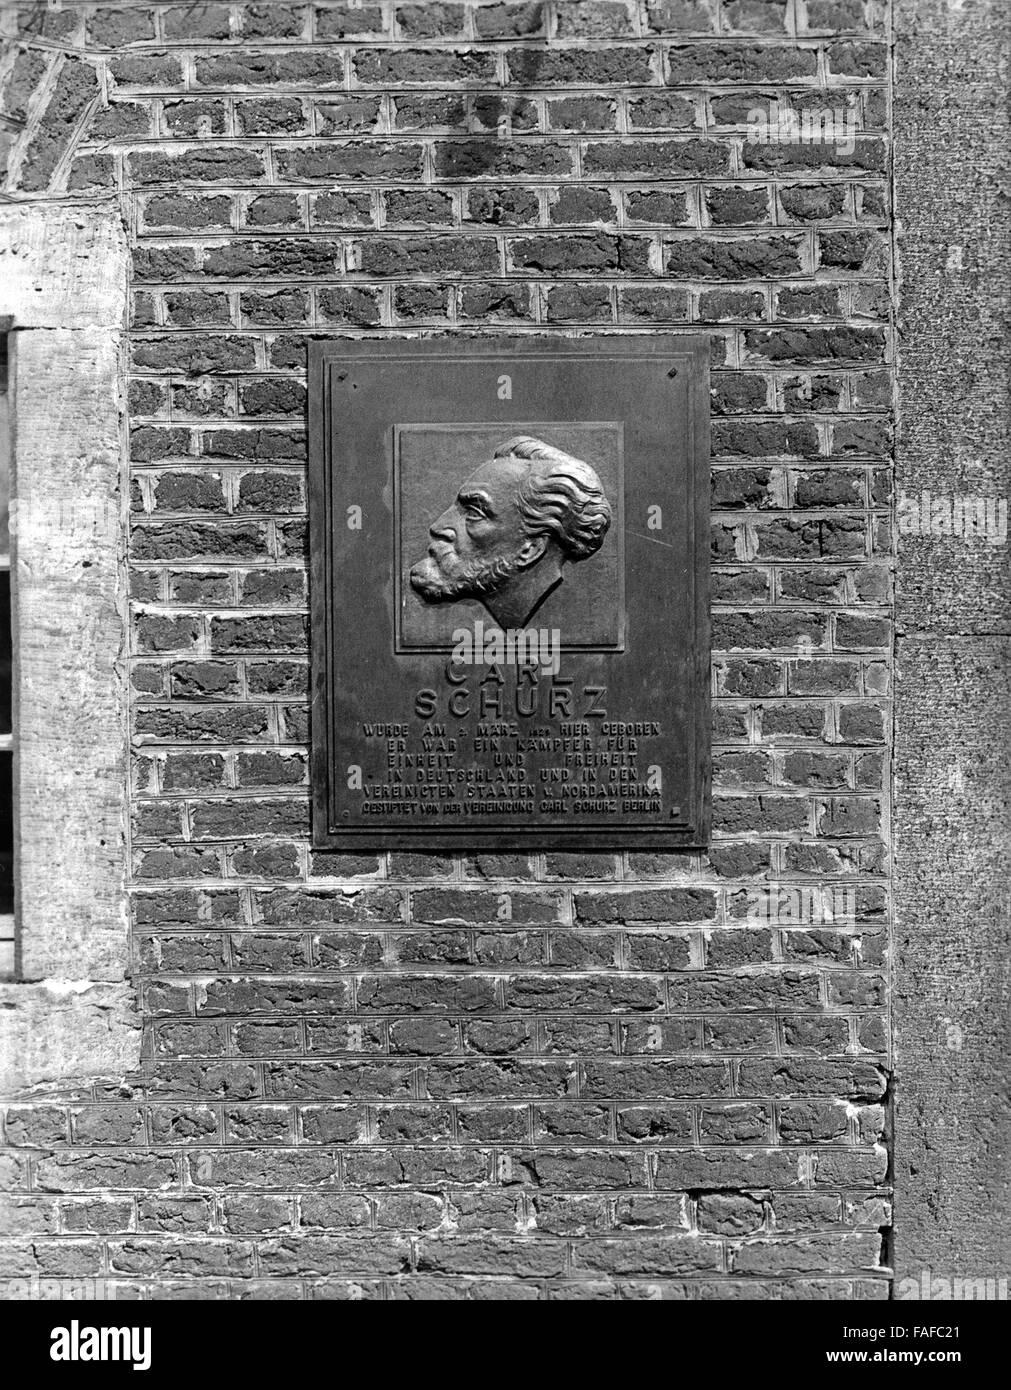 Gedenkplakette am Geburtshaus von Carl Schurz in Liblar bei Erftstadt, Deutschland 1930er Jahre. Memorial plate at the house where Carl Schurz was born at Liblar near Erfstadt, Germany 1930s. Stock Photo